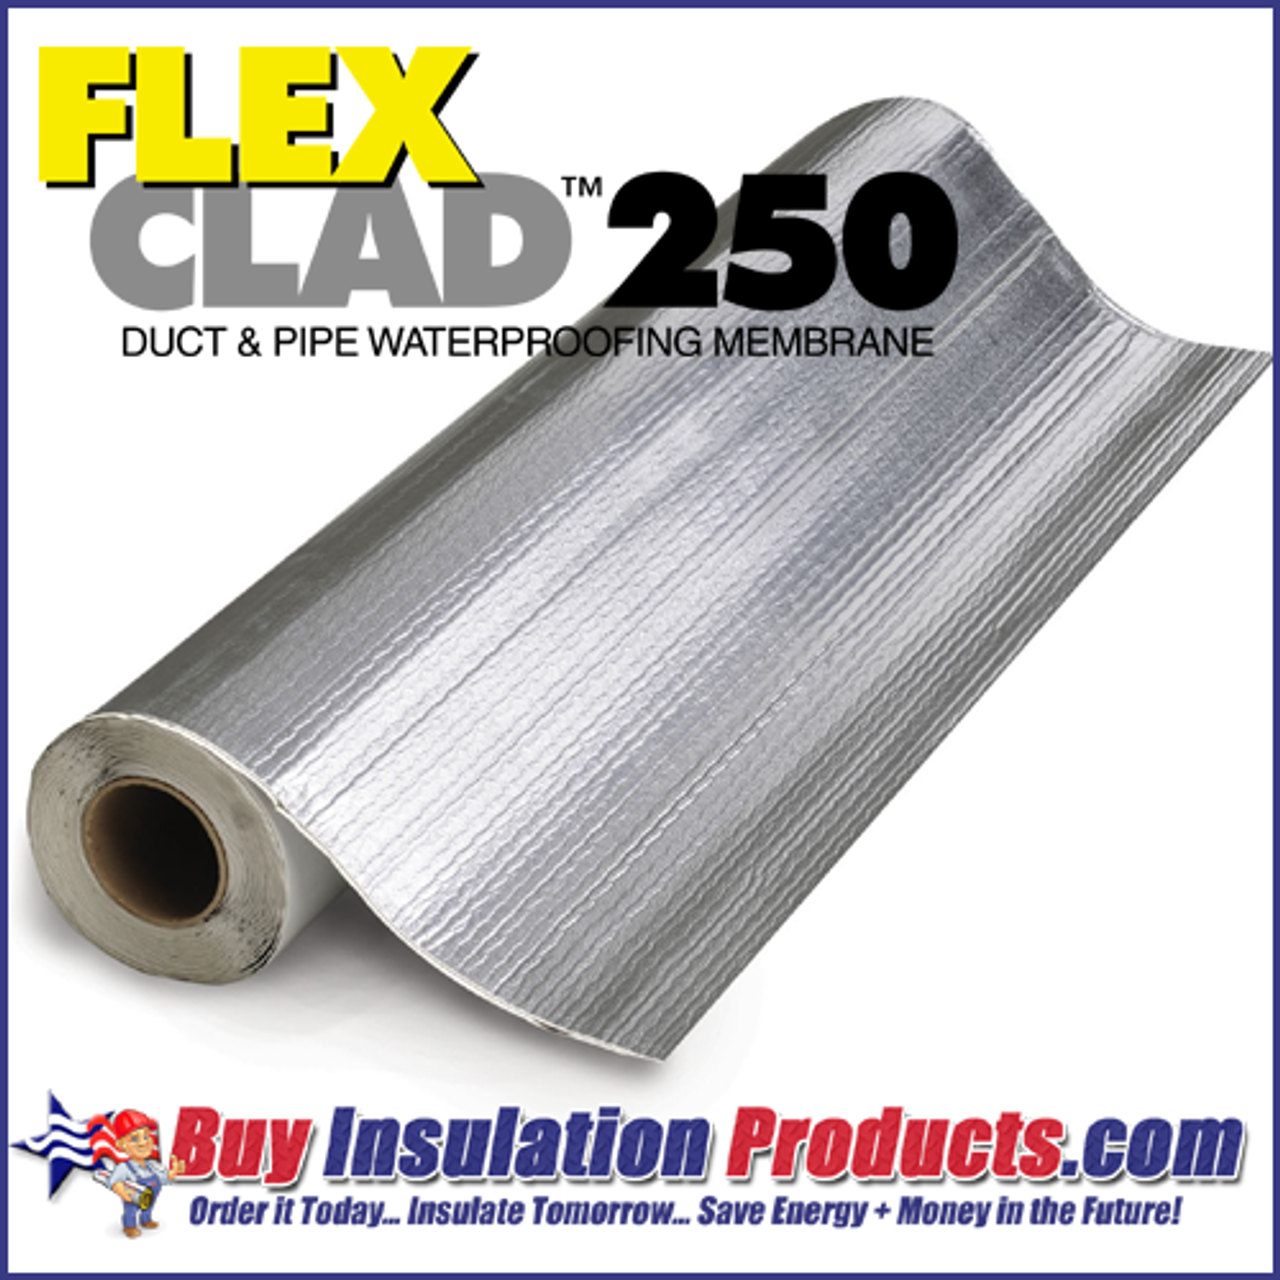 FlexClad 250 Outdoor Aluminum Waterproofing Membrane